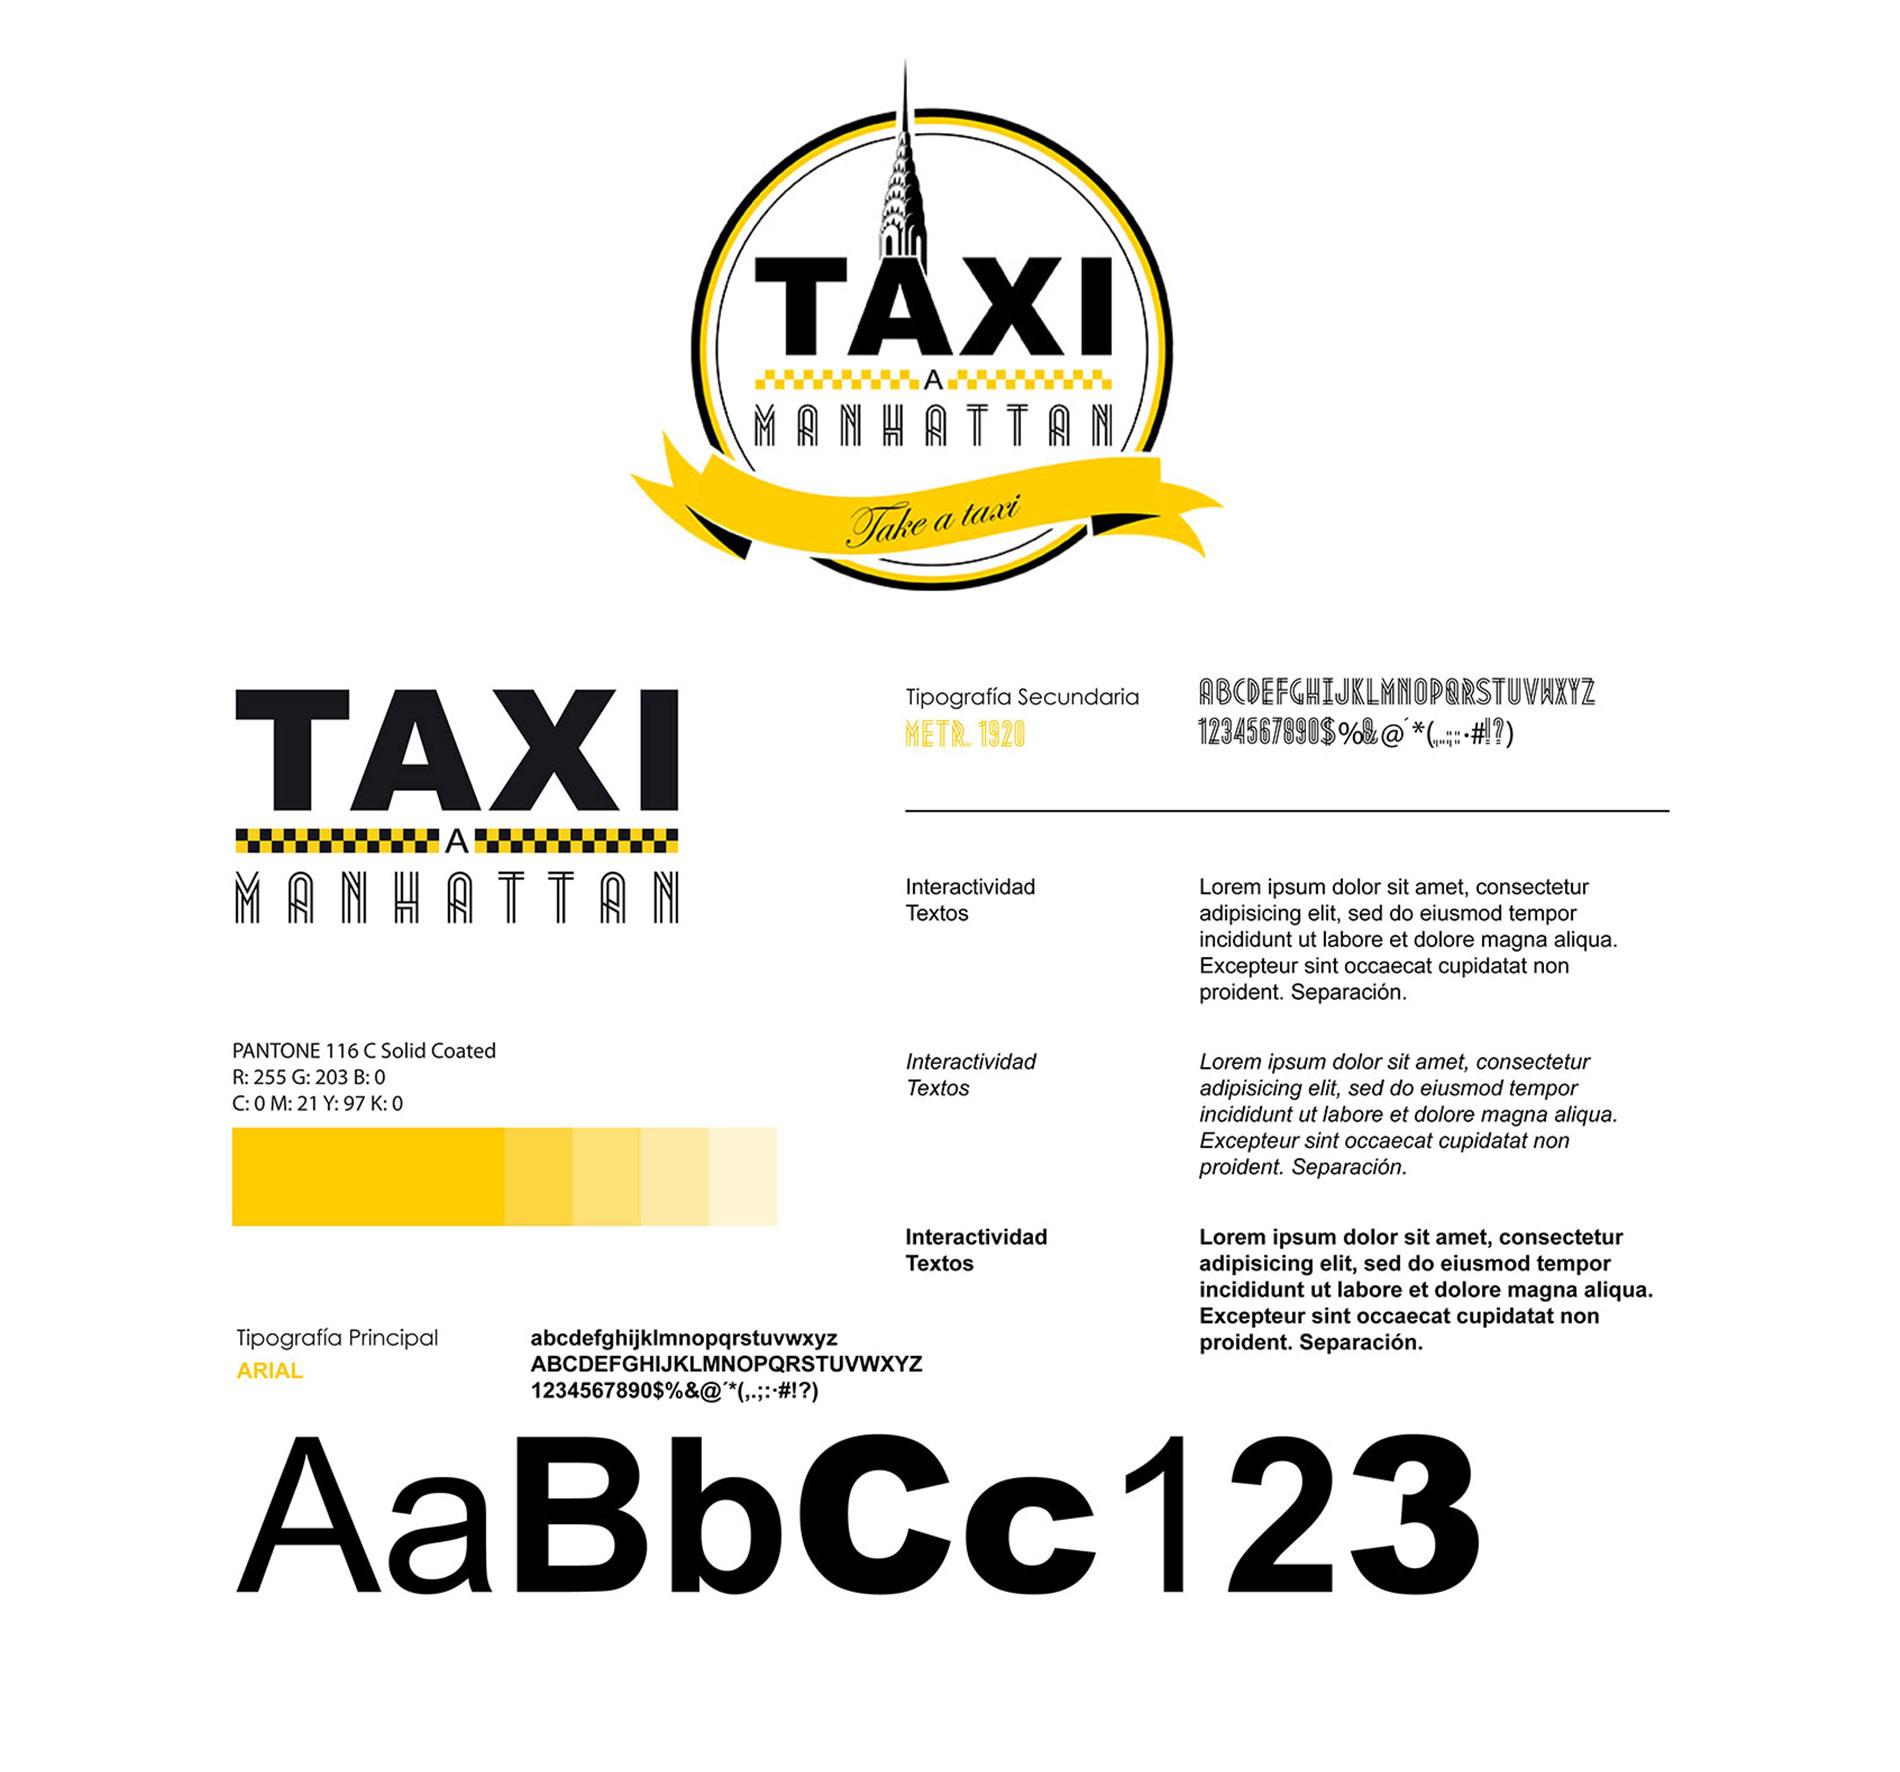 proyecto-taxi-a-manhattan-agencia-de-publicidad-alcala-de-henares